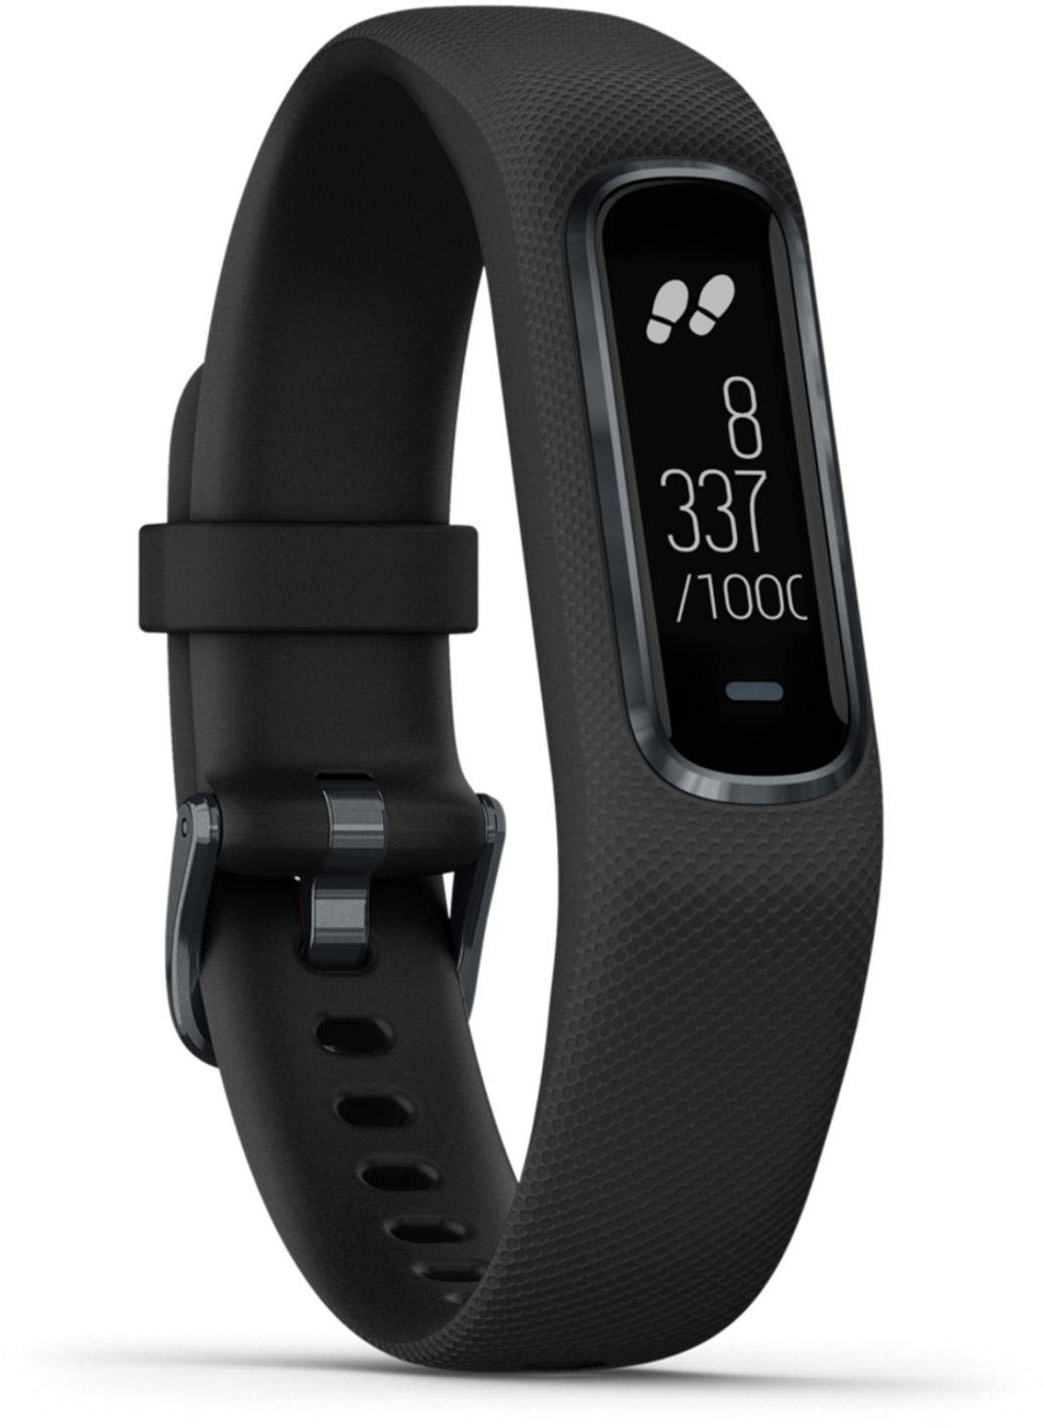 Garmin Vivosmart 4 Smart-Aktivitätstracker mit Tools zur Herzfrequenz- und Fitnessüberwachung am Handgelenk, Schwarz